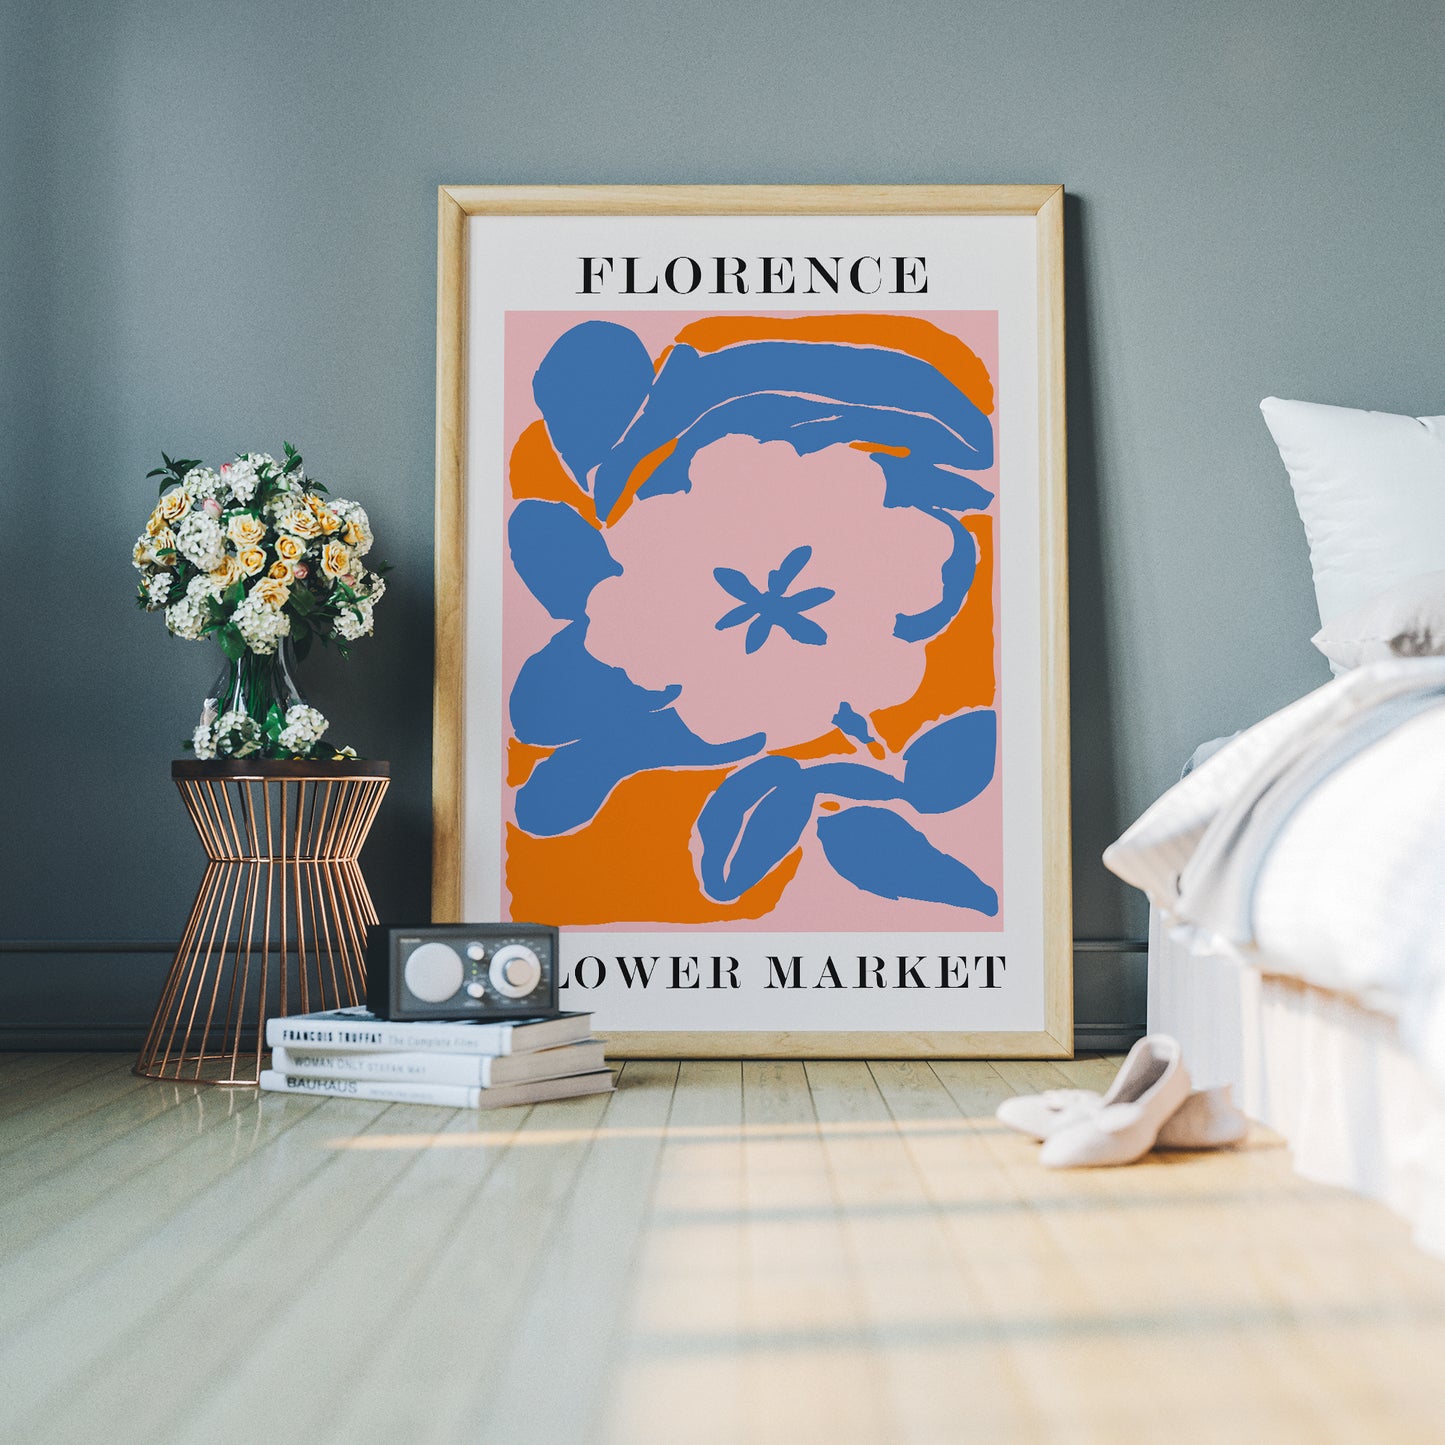 Florence Flower Market Poster